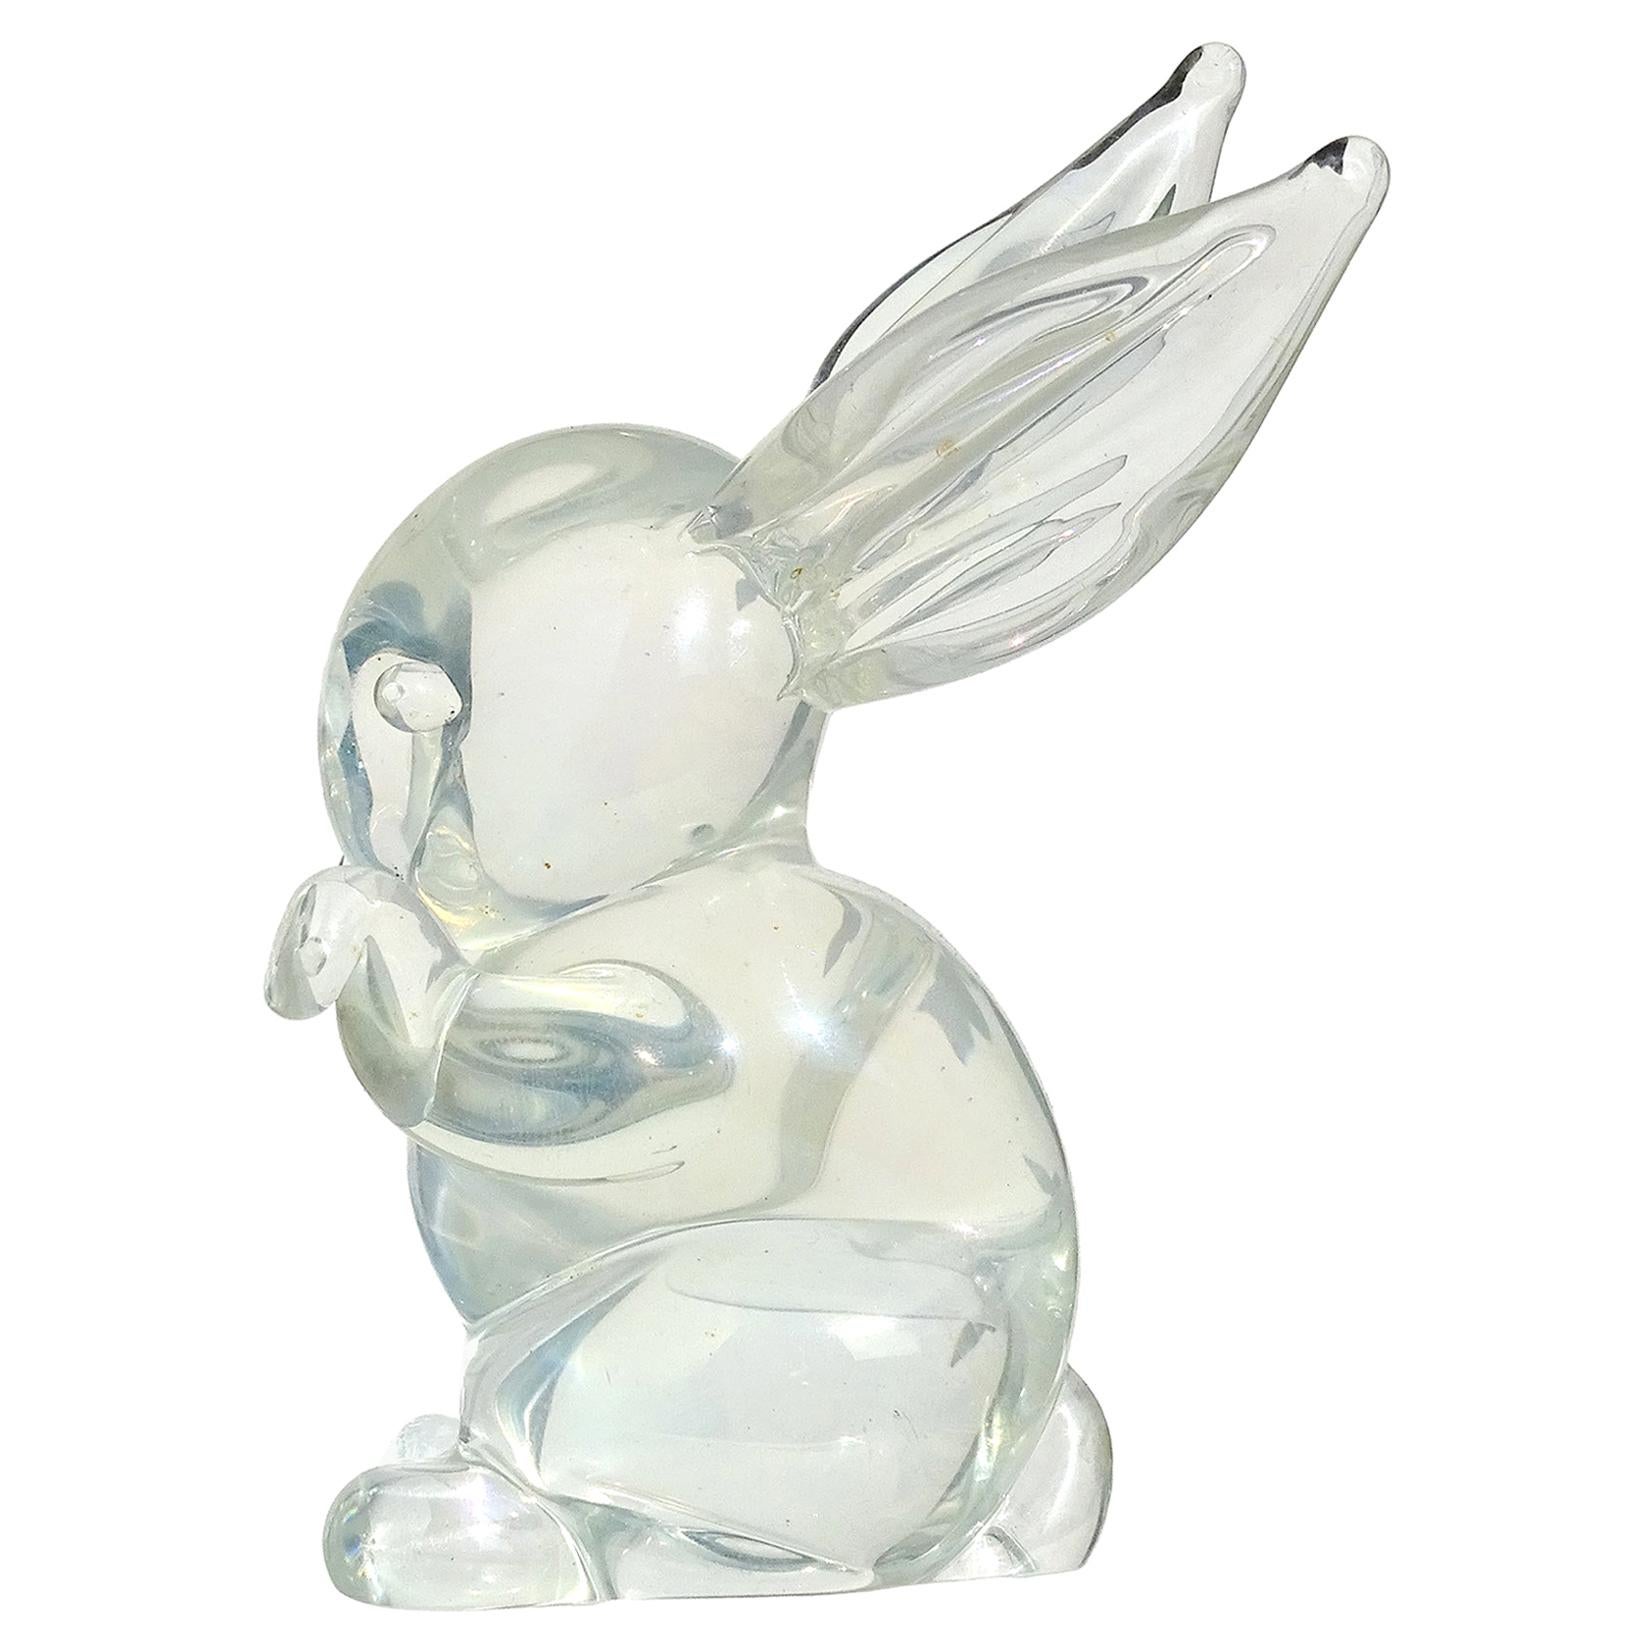 Vie Naturals Hand Blown Glass Sculpture Rabbit